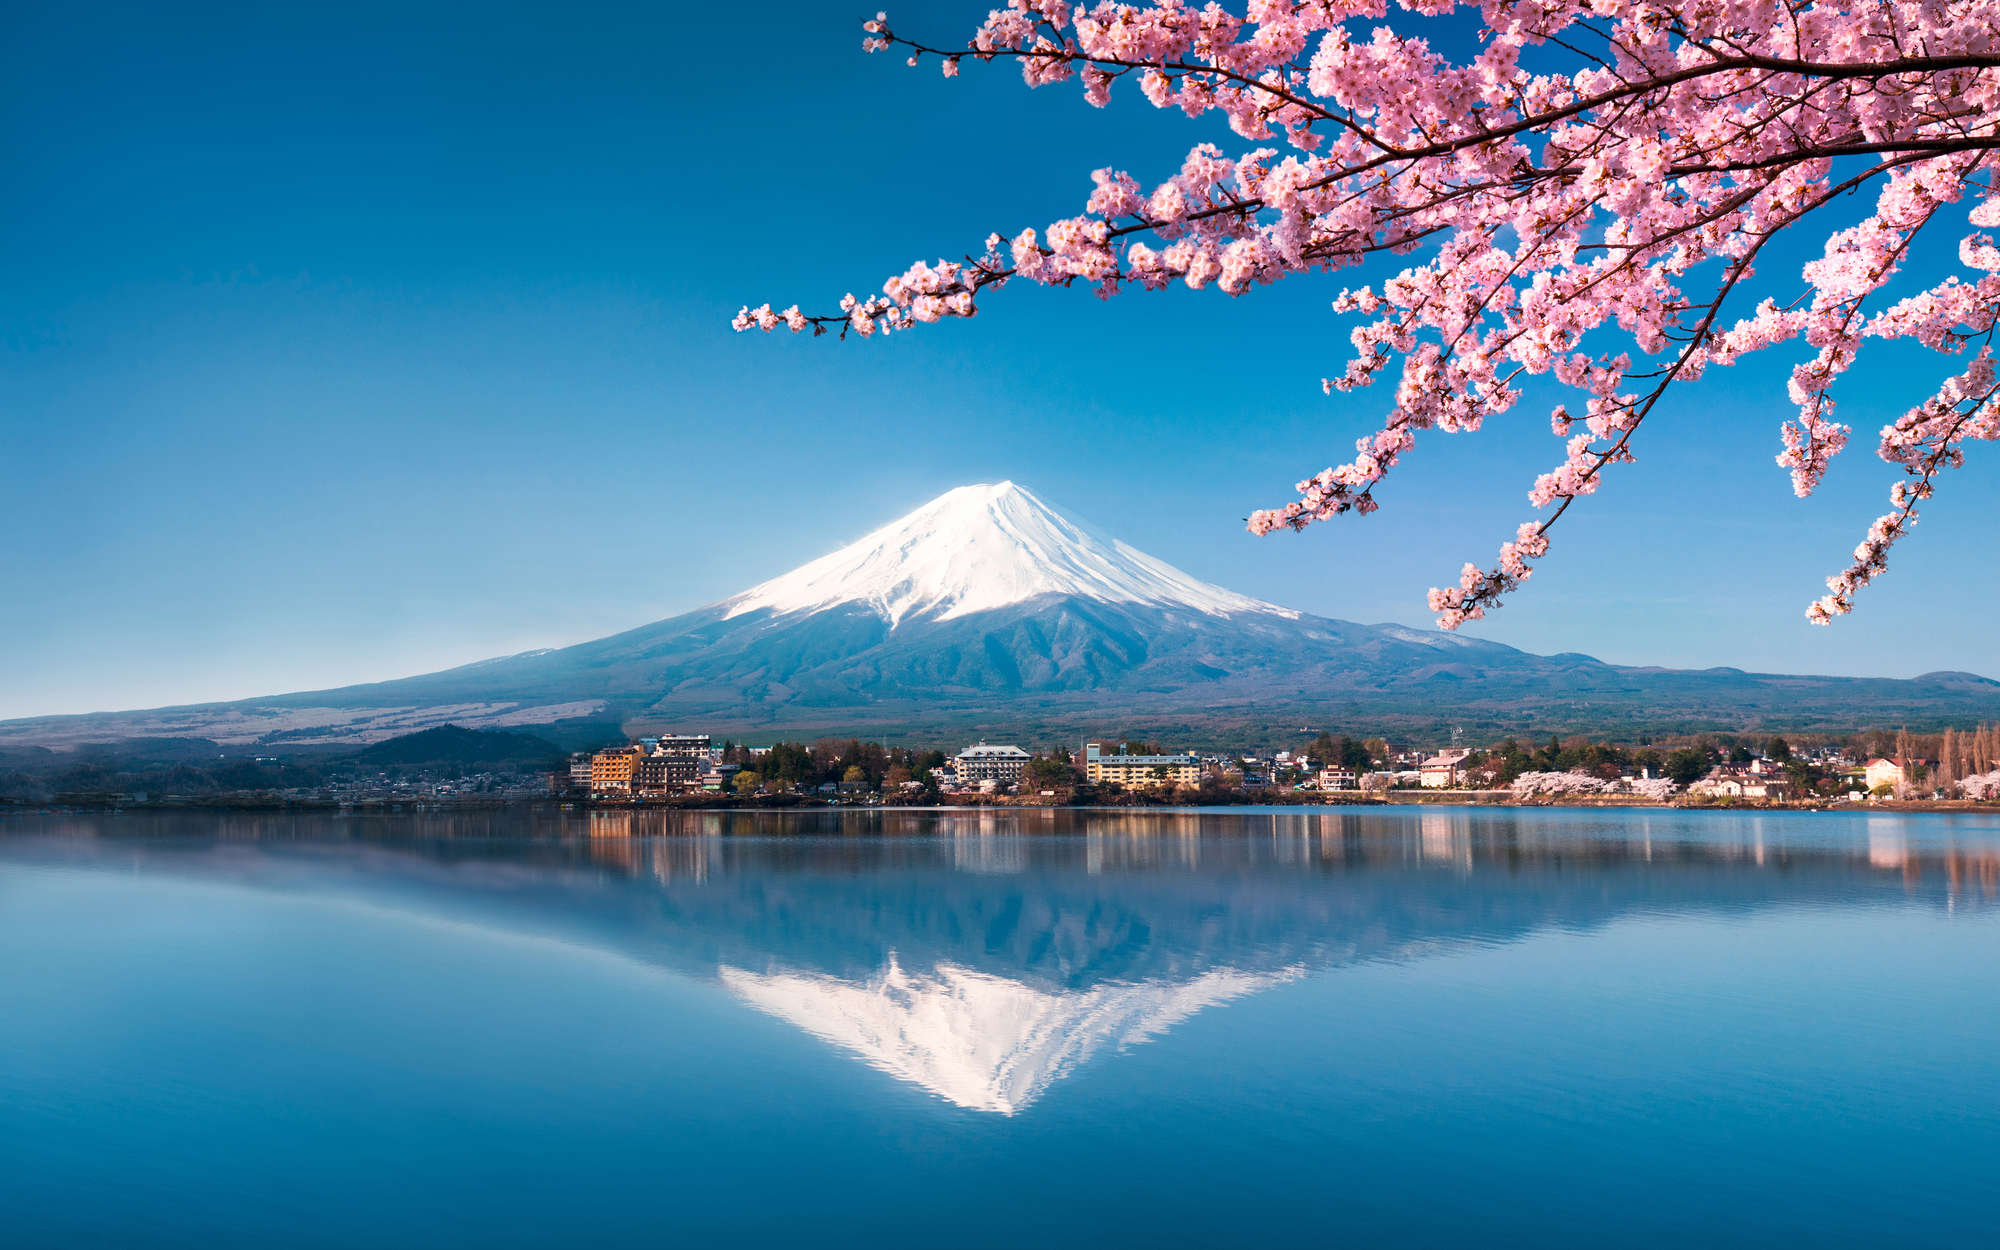             Fototapete Vulkan Fuji in Japan – Premium Glattvlies
        